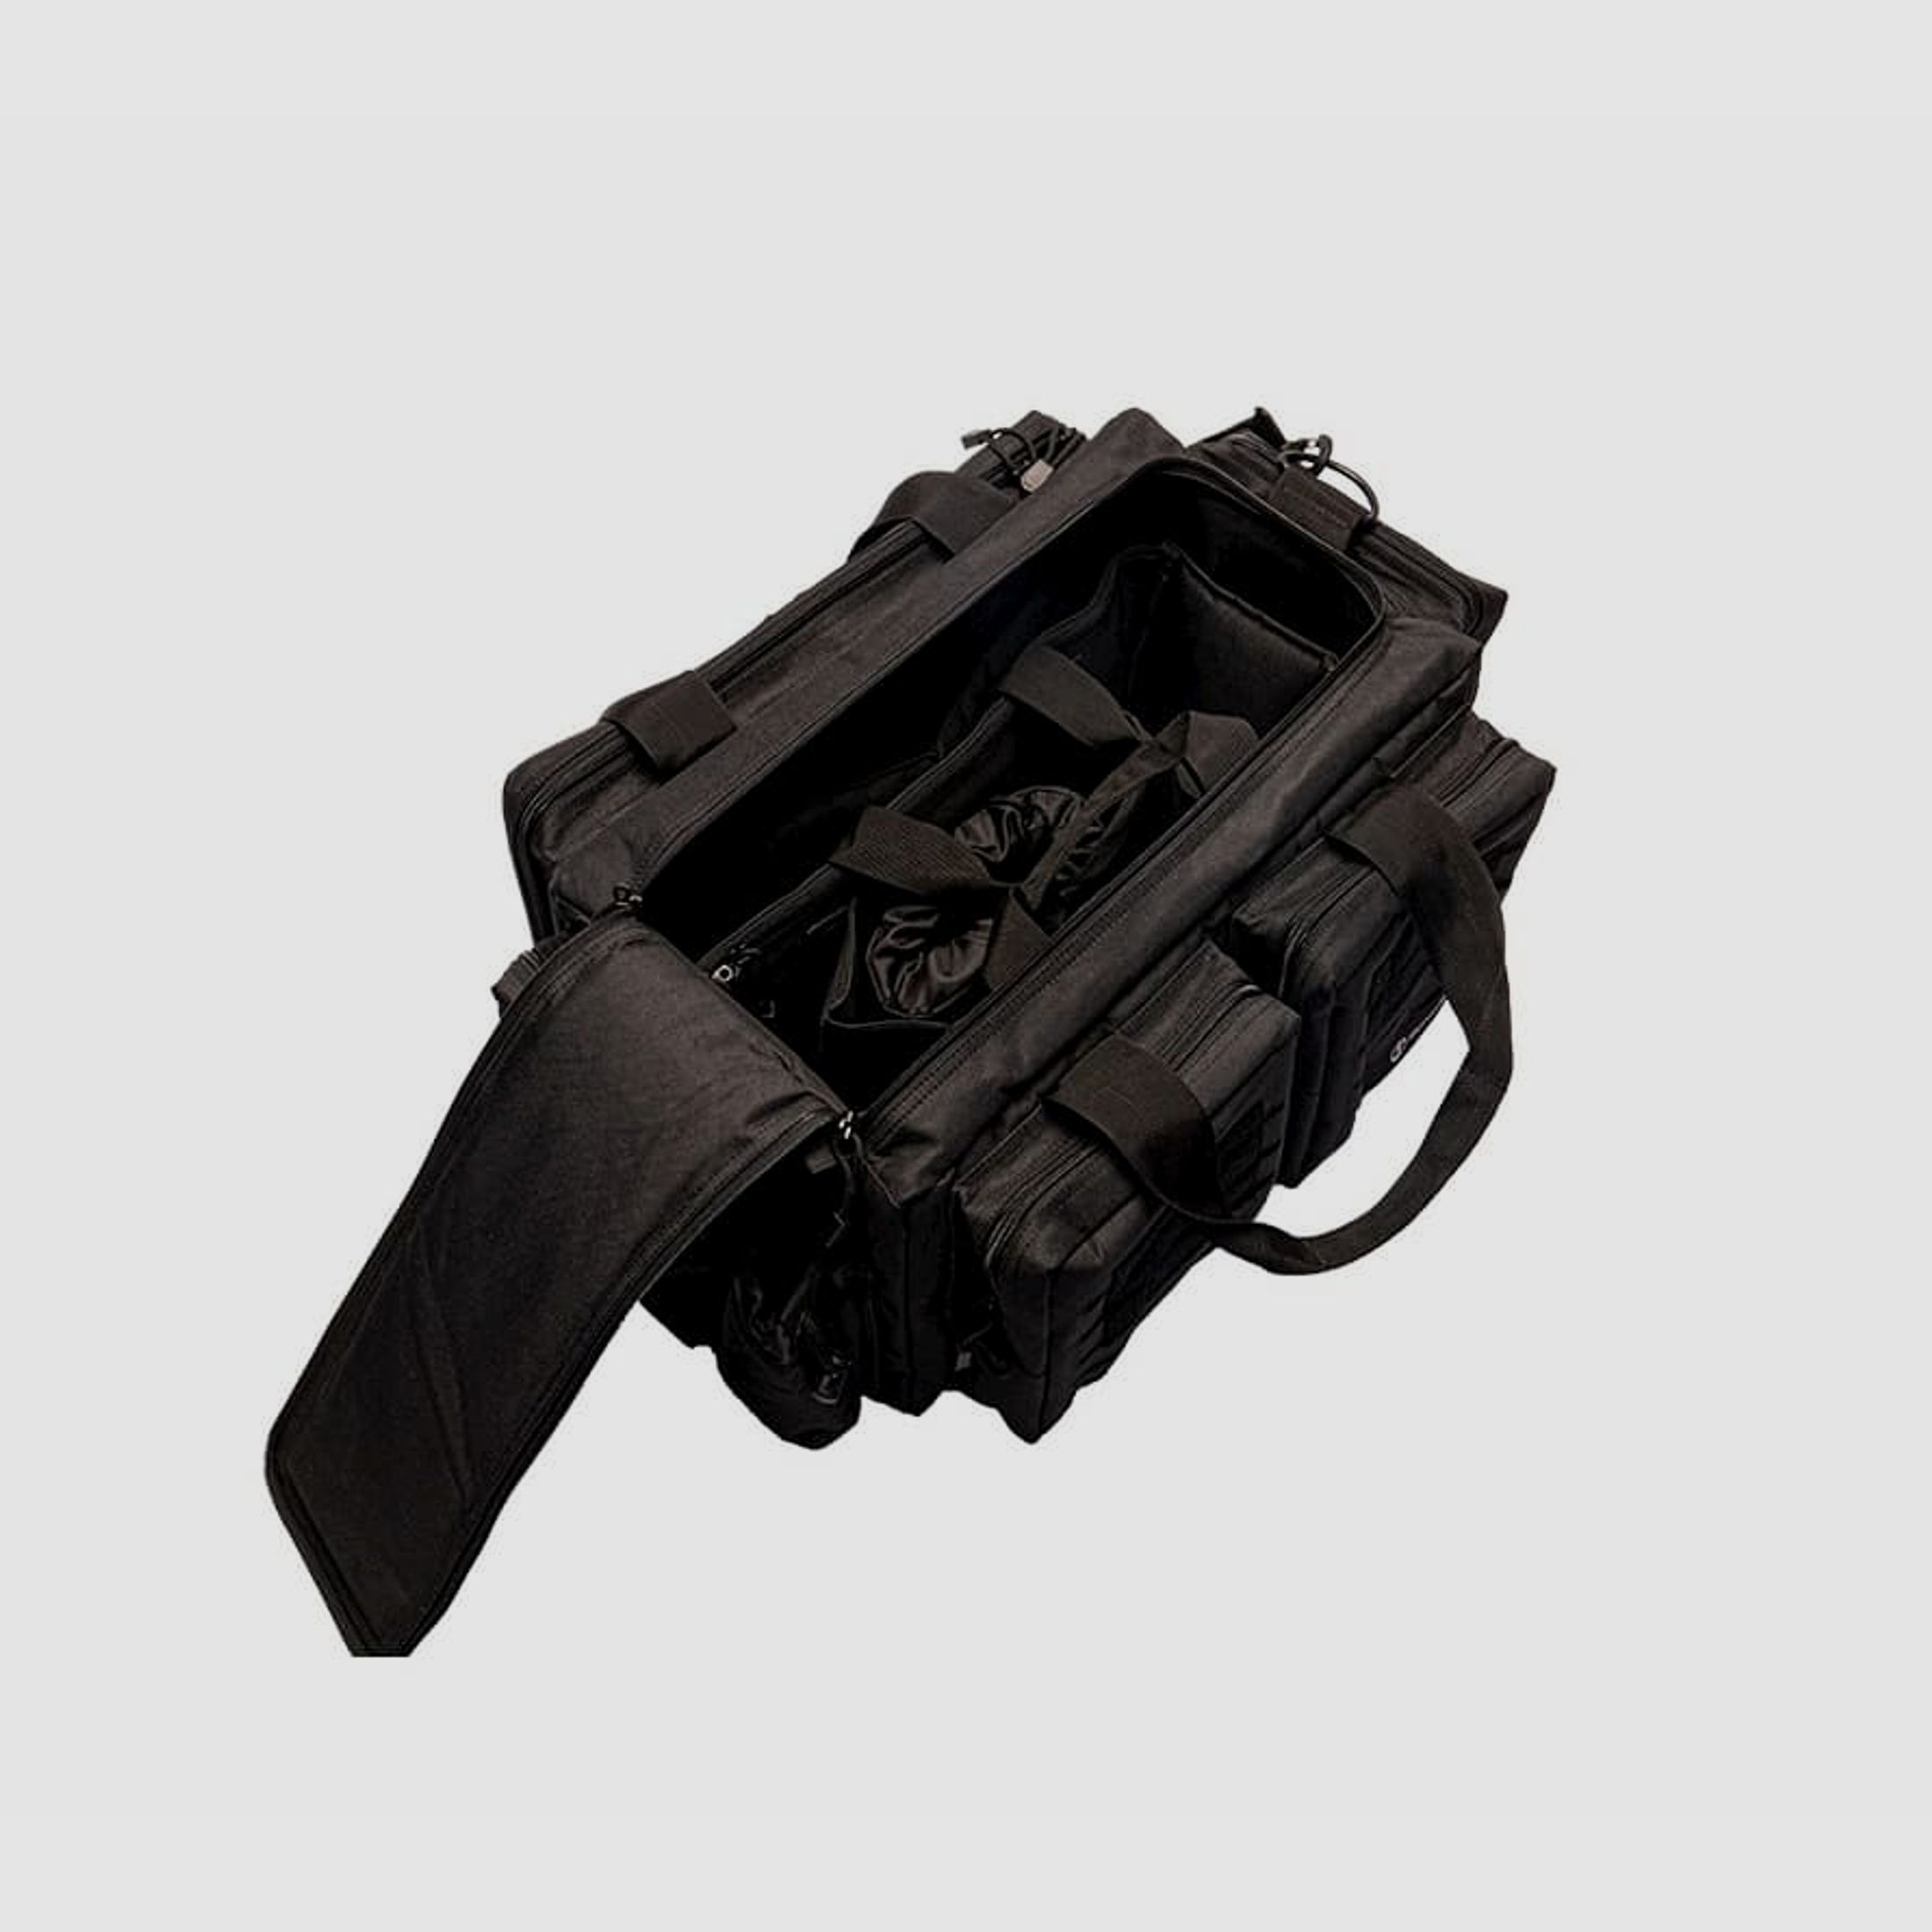 SCHMEISSER Schießsporttasche Range Bag Pistolentasche 61x41x25,4cm schwarz